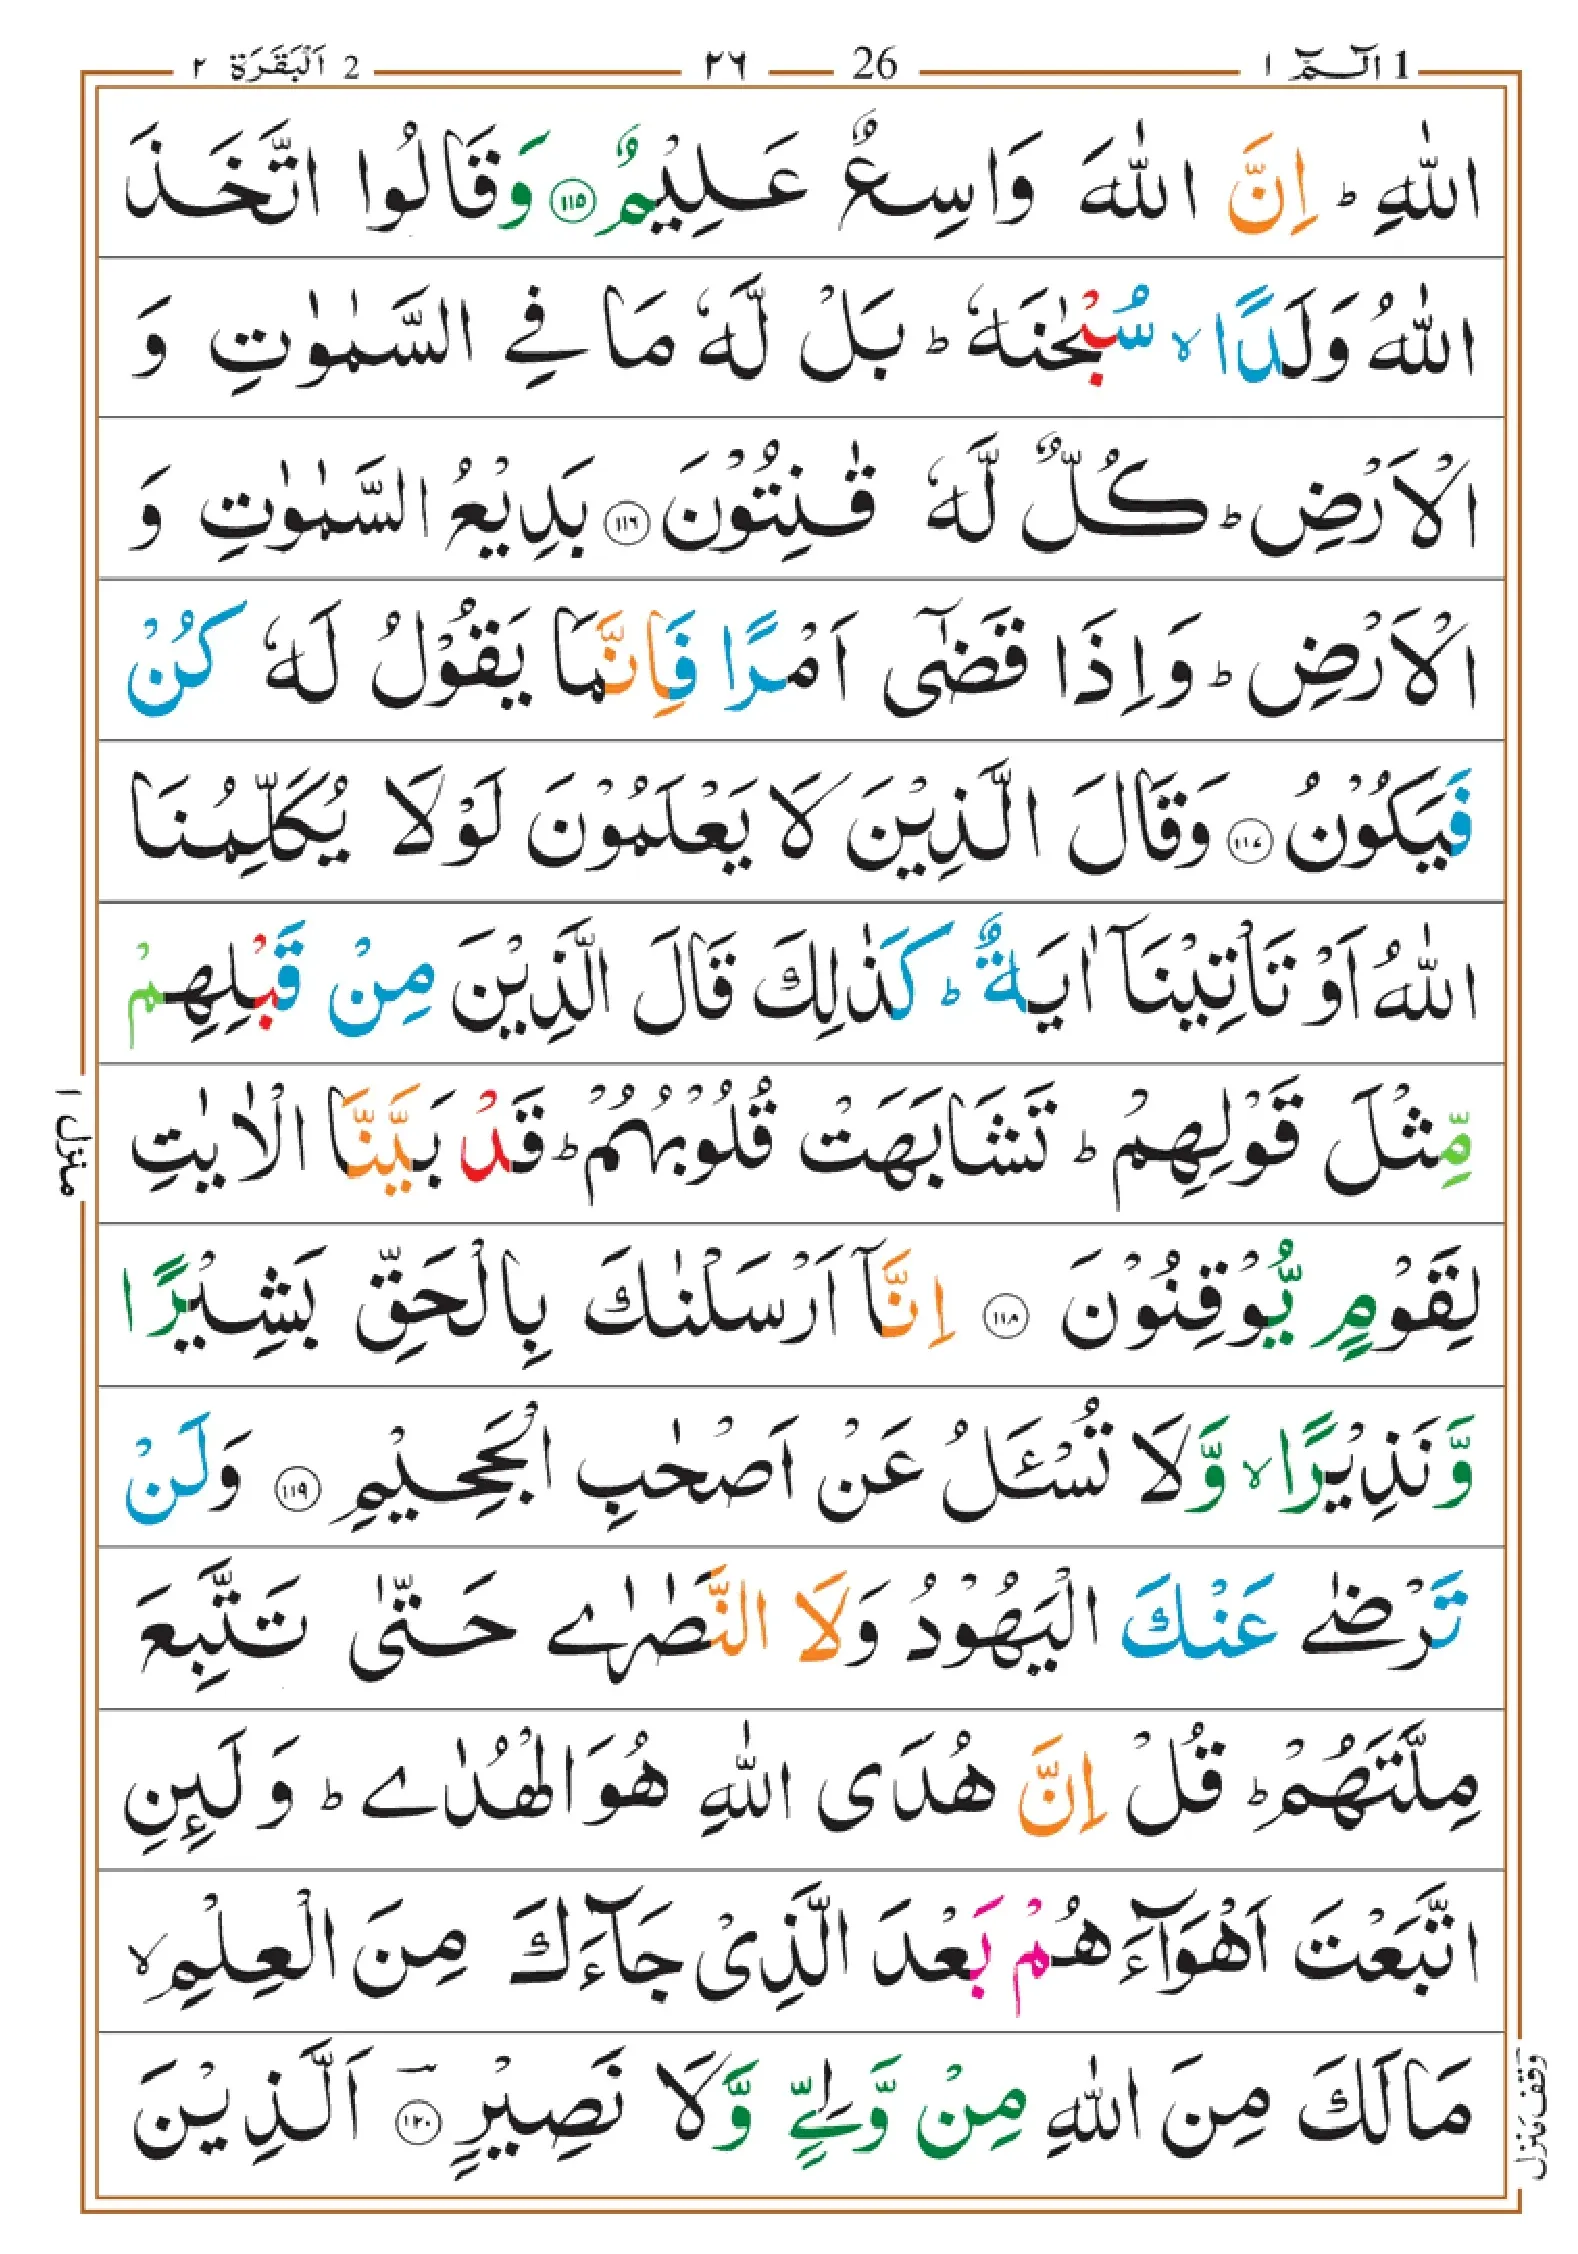 quran-para-1(1)_page-0026